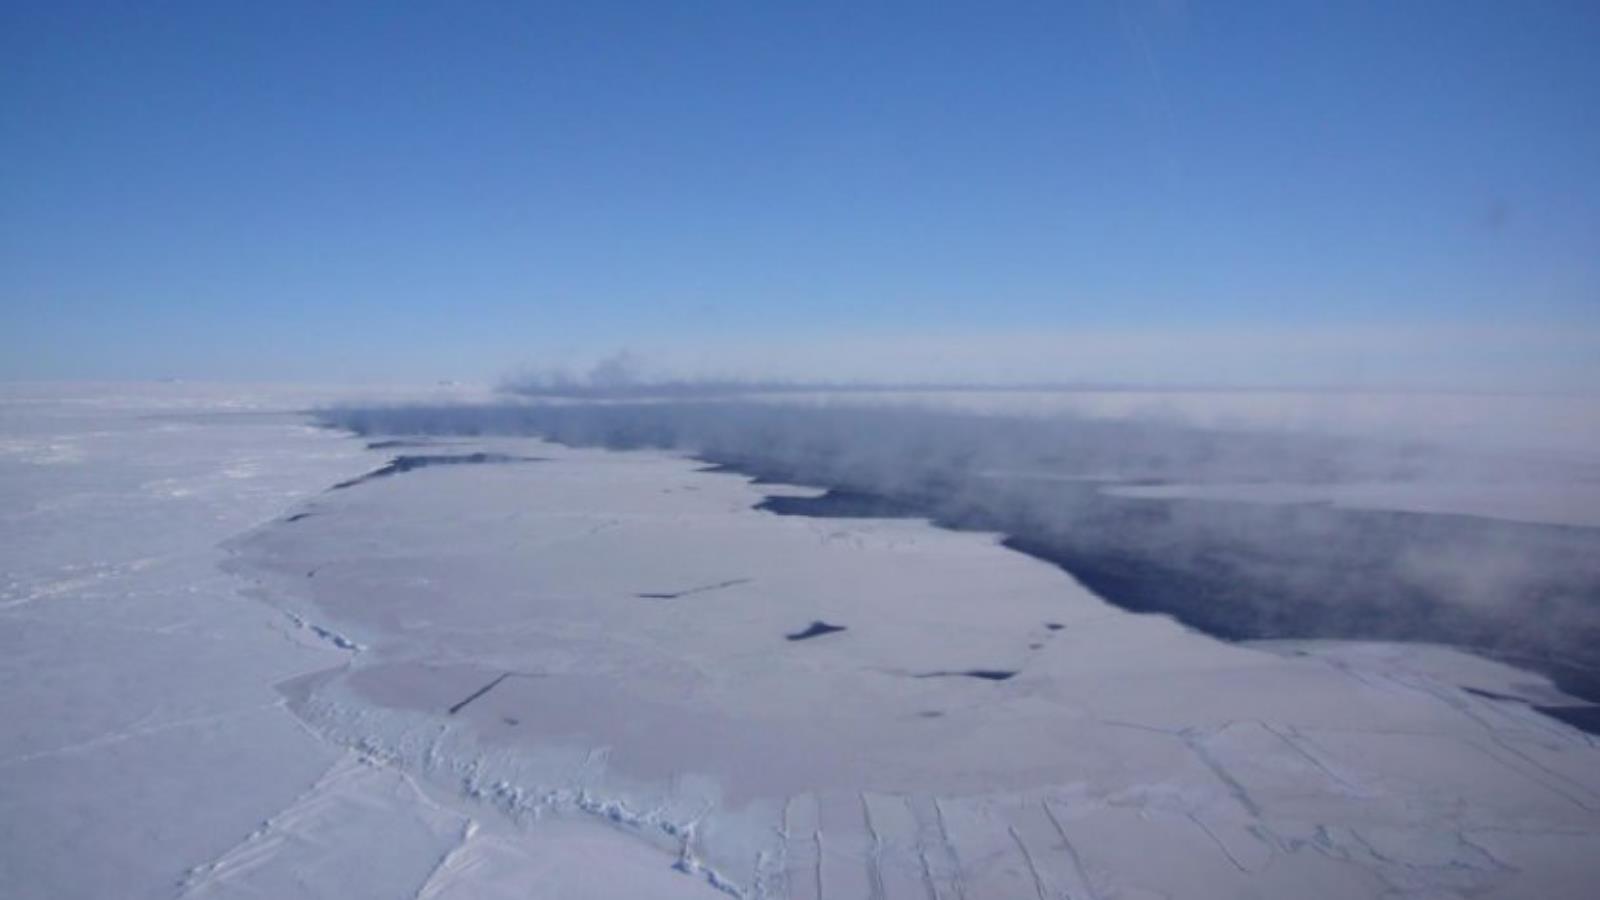 بلغت مساحة ثقب بولينيا أنتاركتيكا نحو 800 ألف كيلومتر مربع قبل أن يندمج مع المحيط المفتوح (جان ليسر، أي سي إي، سي آر سي)